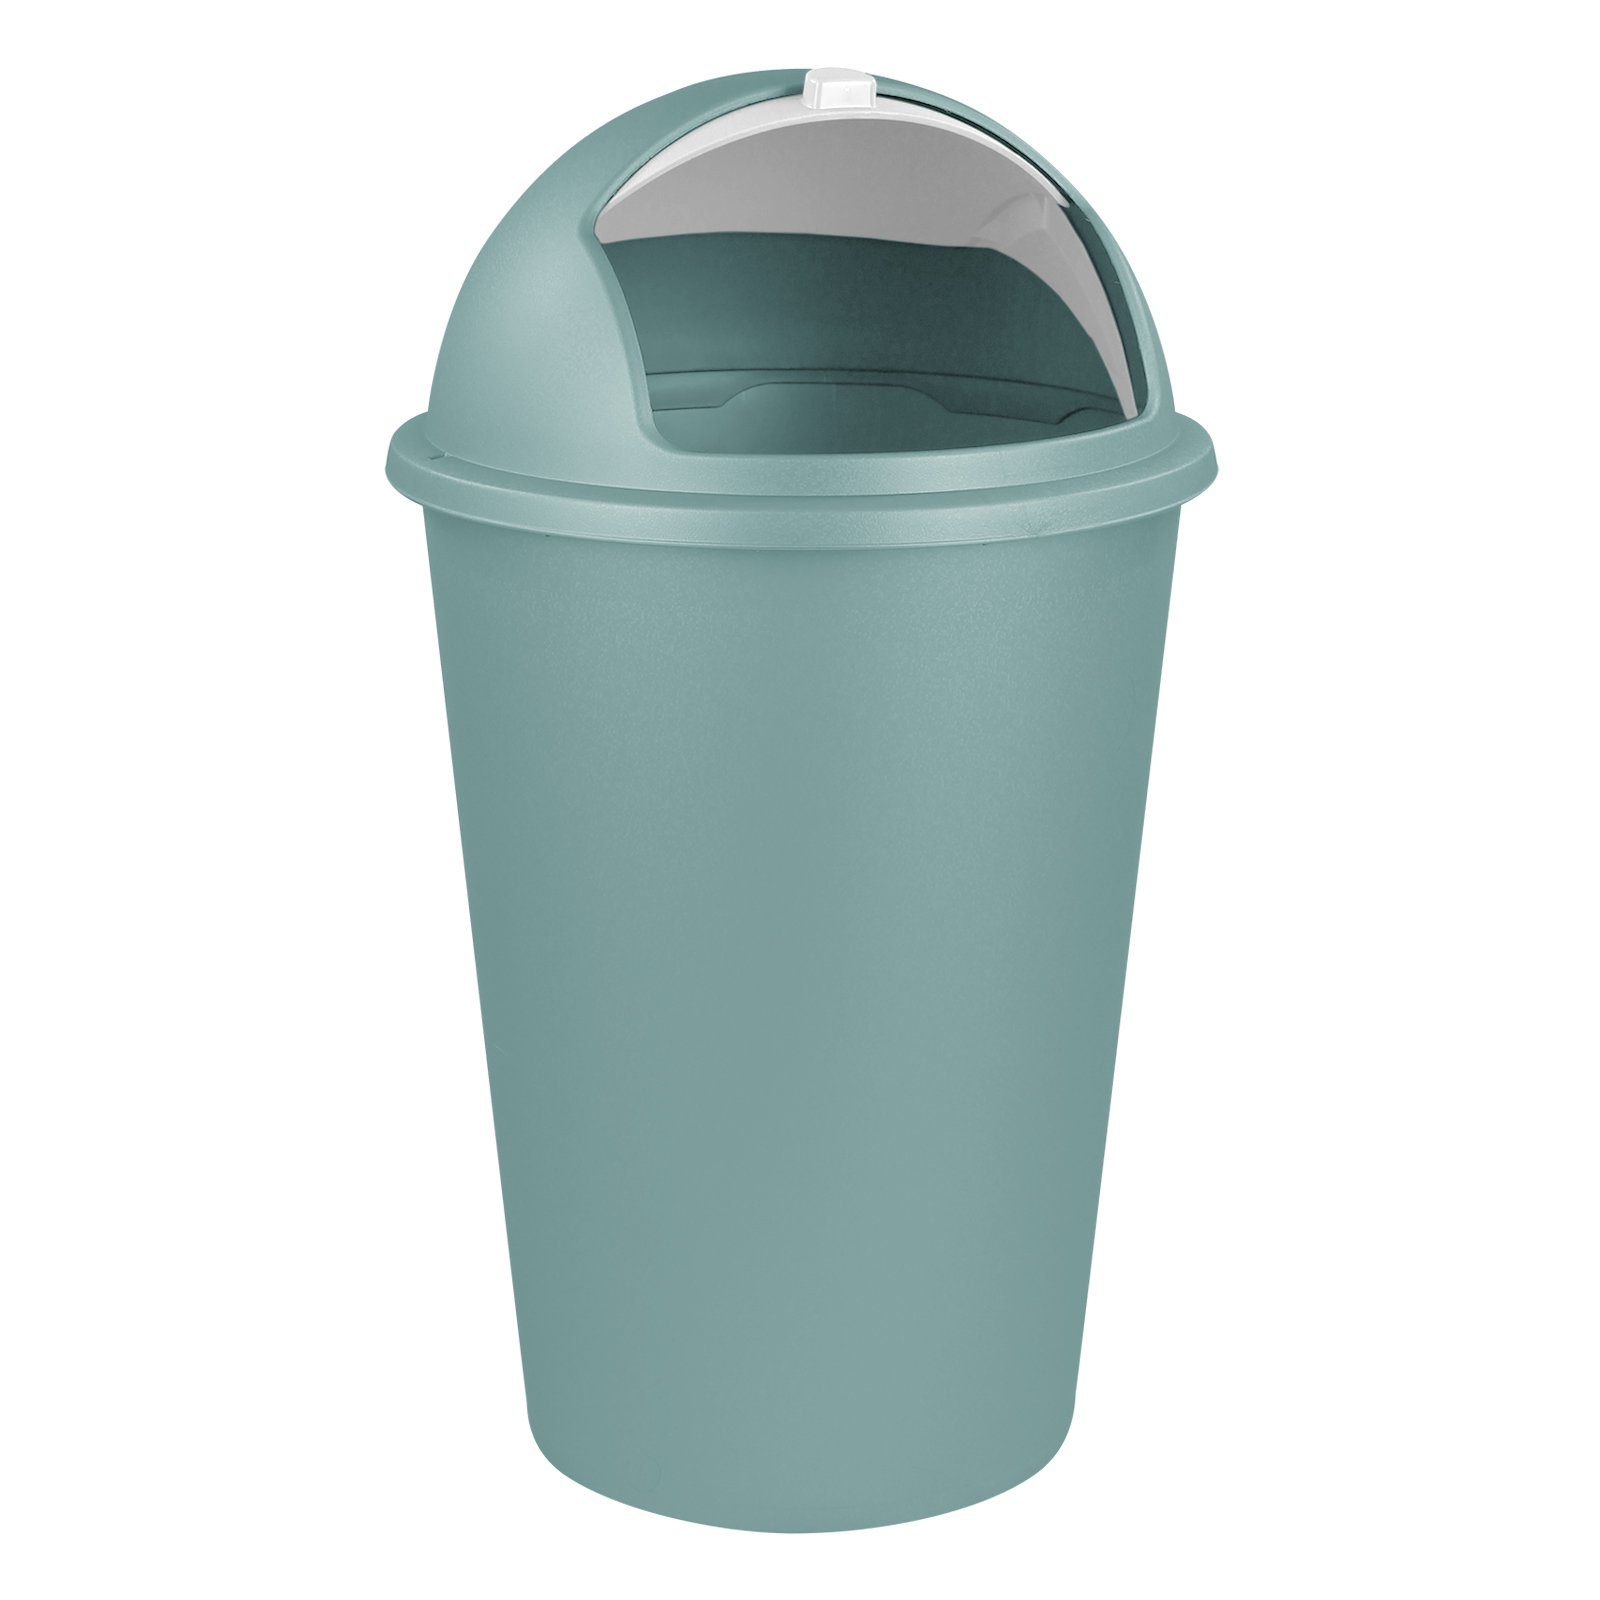 Koopman Müllsammler Müllbehälter Büro Papierkorb Mintgrün Küche Bad Mülleimer 50L Farbauswahl, Abfalleimer mit Mülltonne